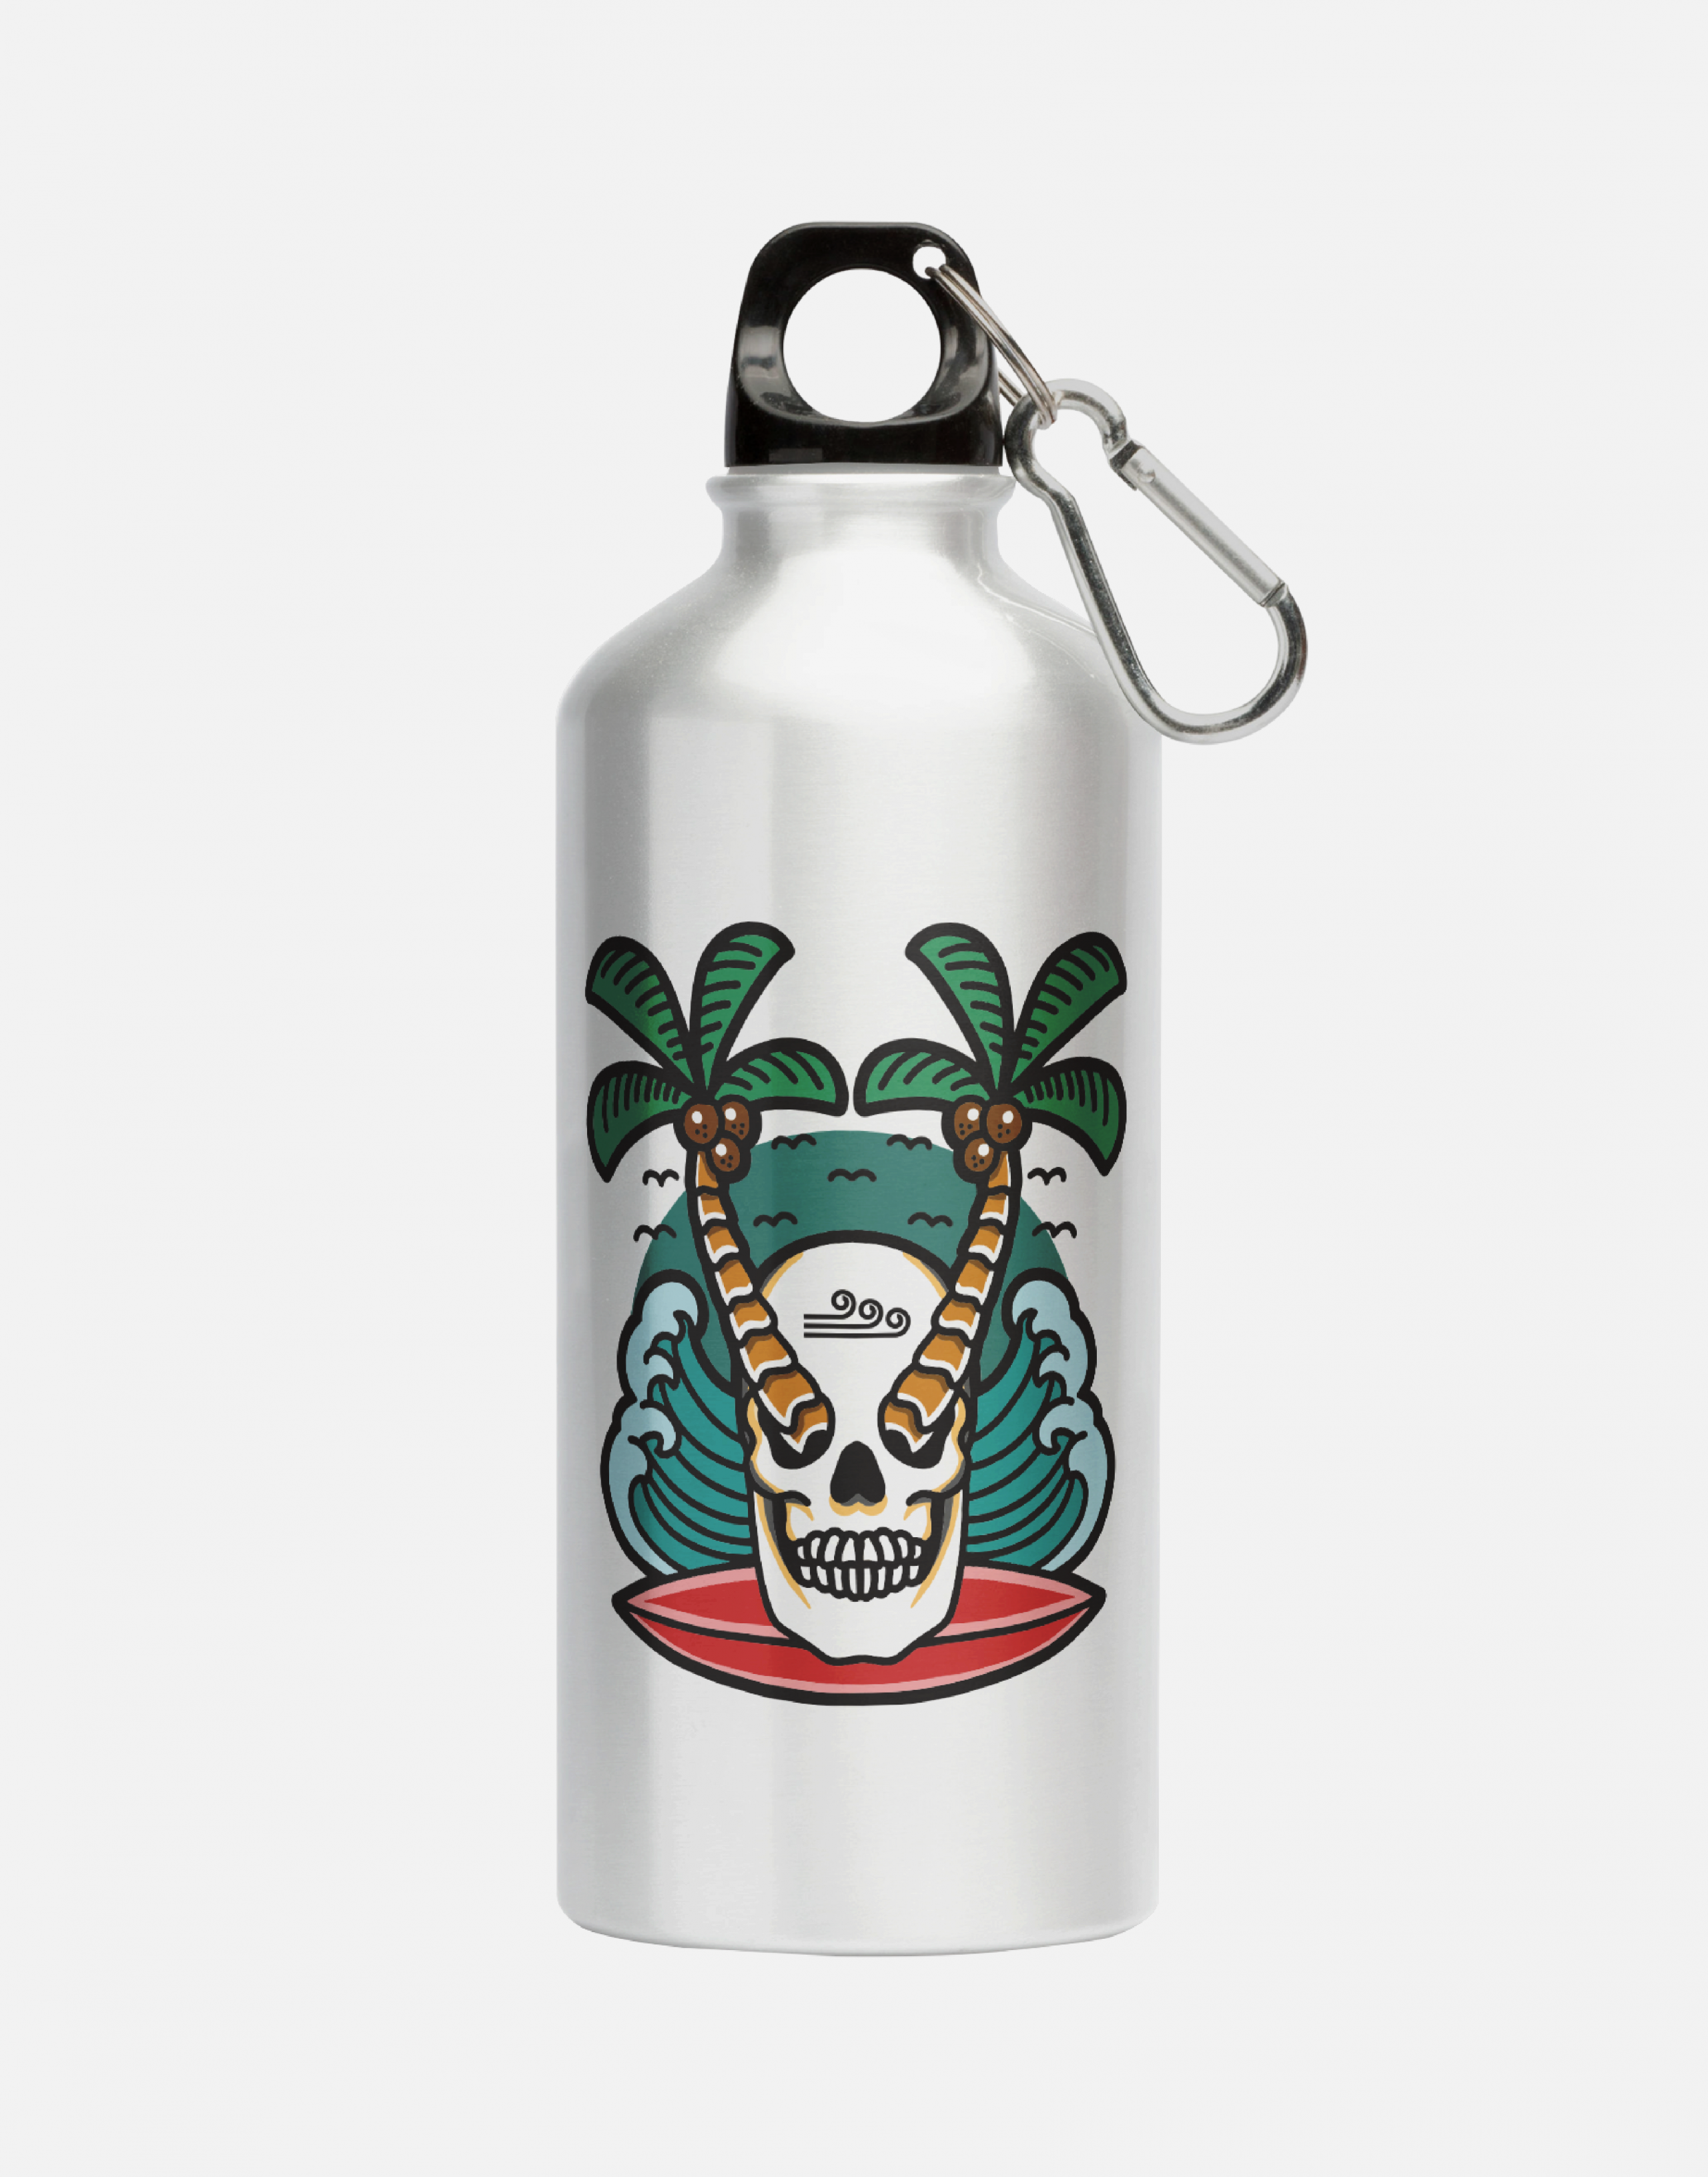 Aluminum lightweight reusable water bottle with Swellone beach design.